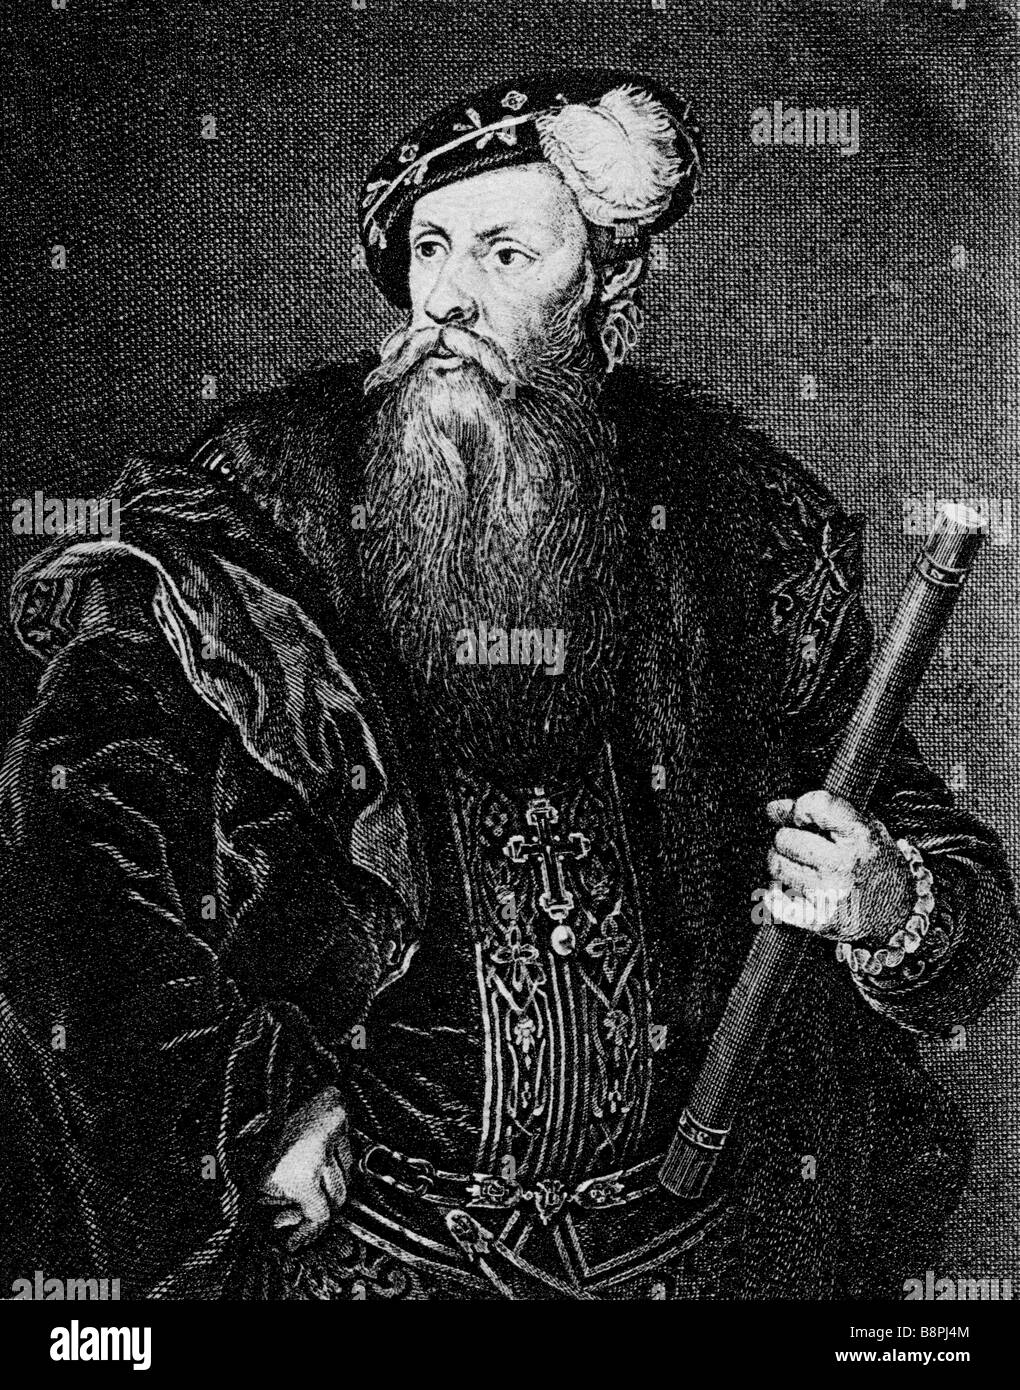 Gustav I (Gustav Vasa) king of Sweden 1523-1560 vintage book illustration Stock Photo